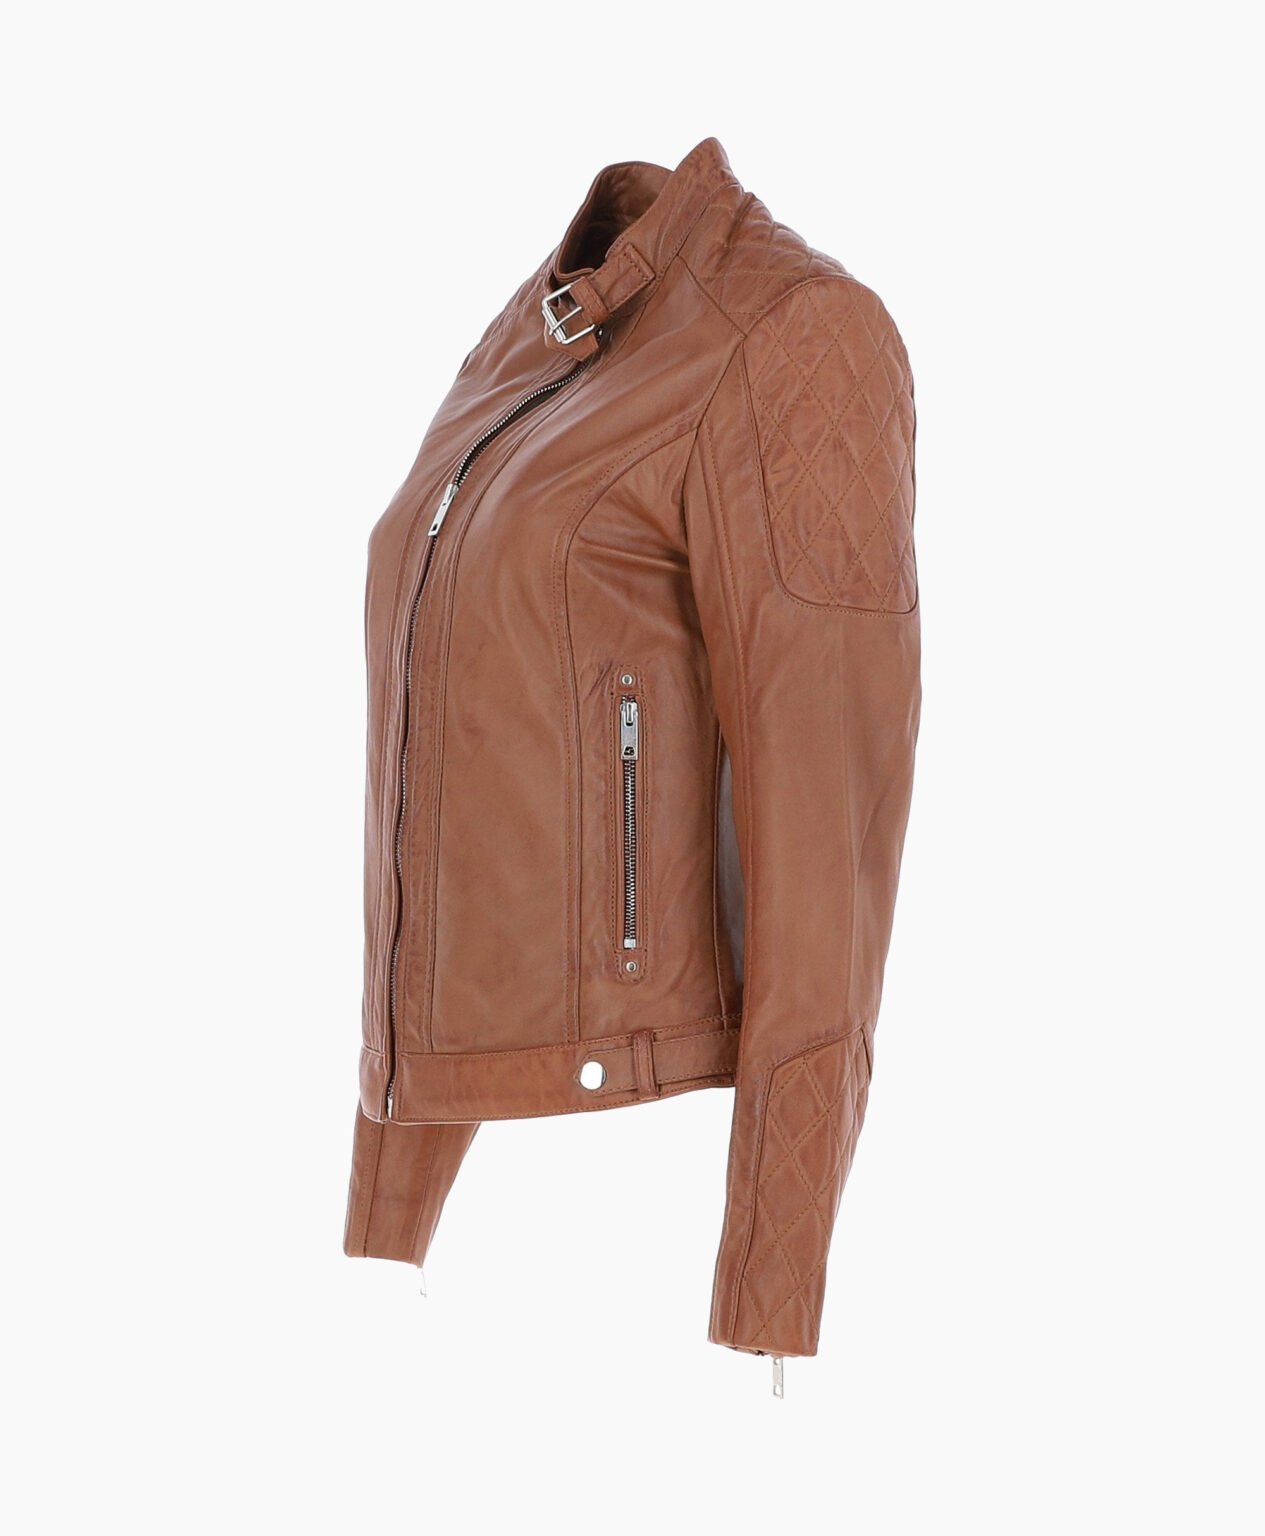 vogue-jacket-leather-jacket-tan-malibu-image201